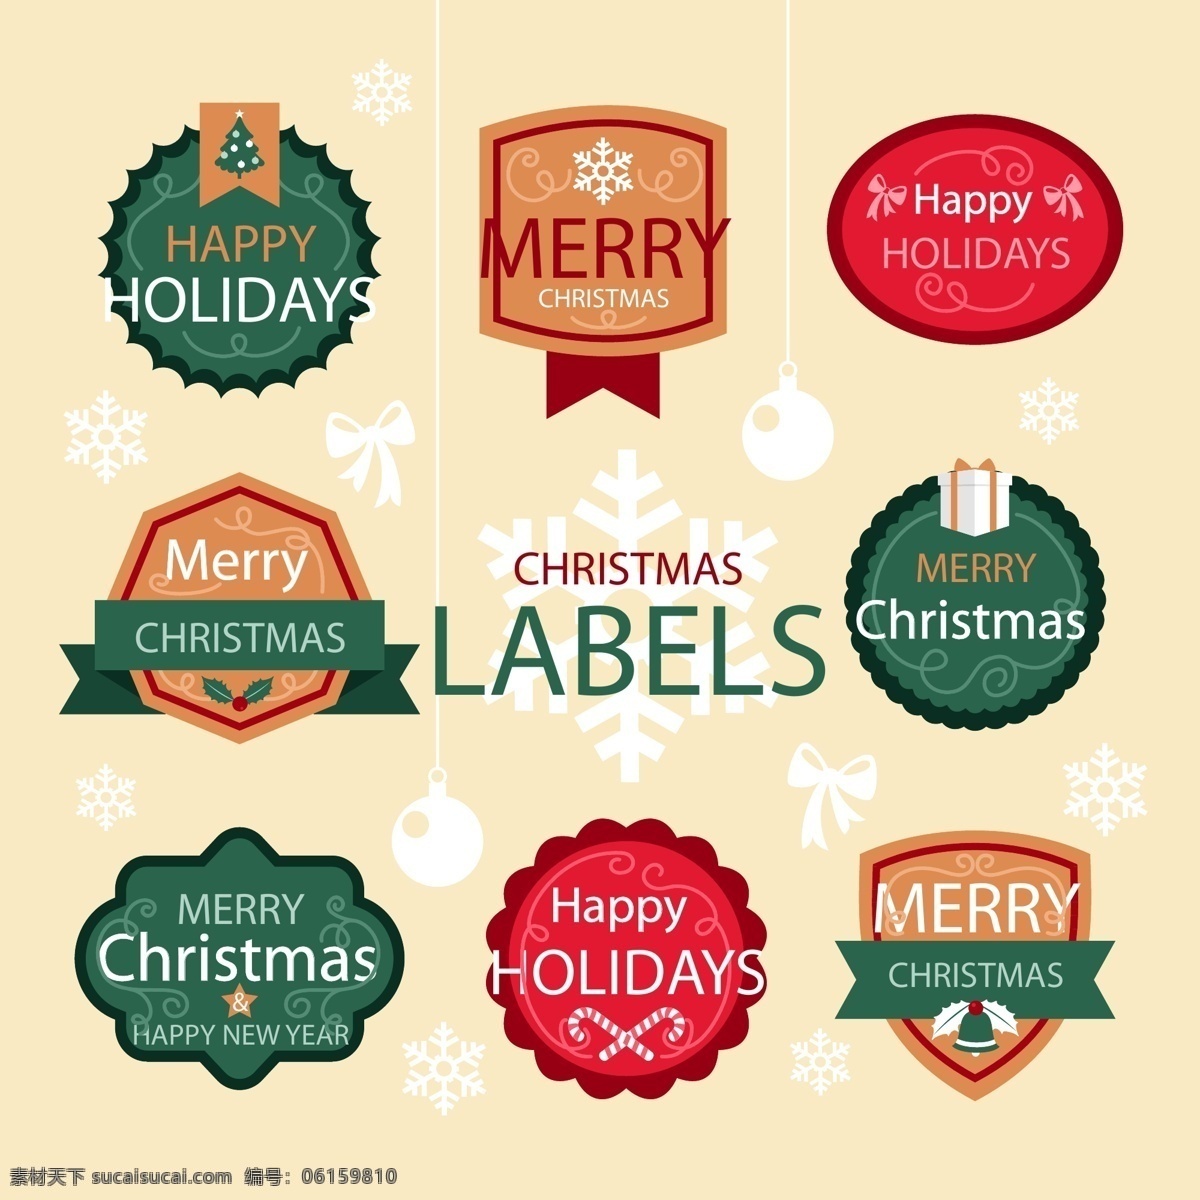 经典 颜色 圣诞 标签 英文 圣诞节 矢量素材 圣诞色 节日标签 ai素材